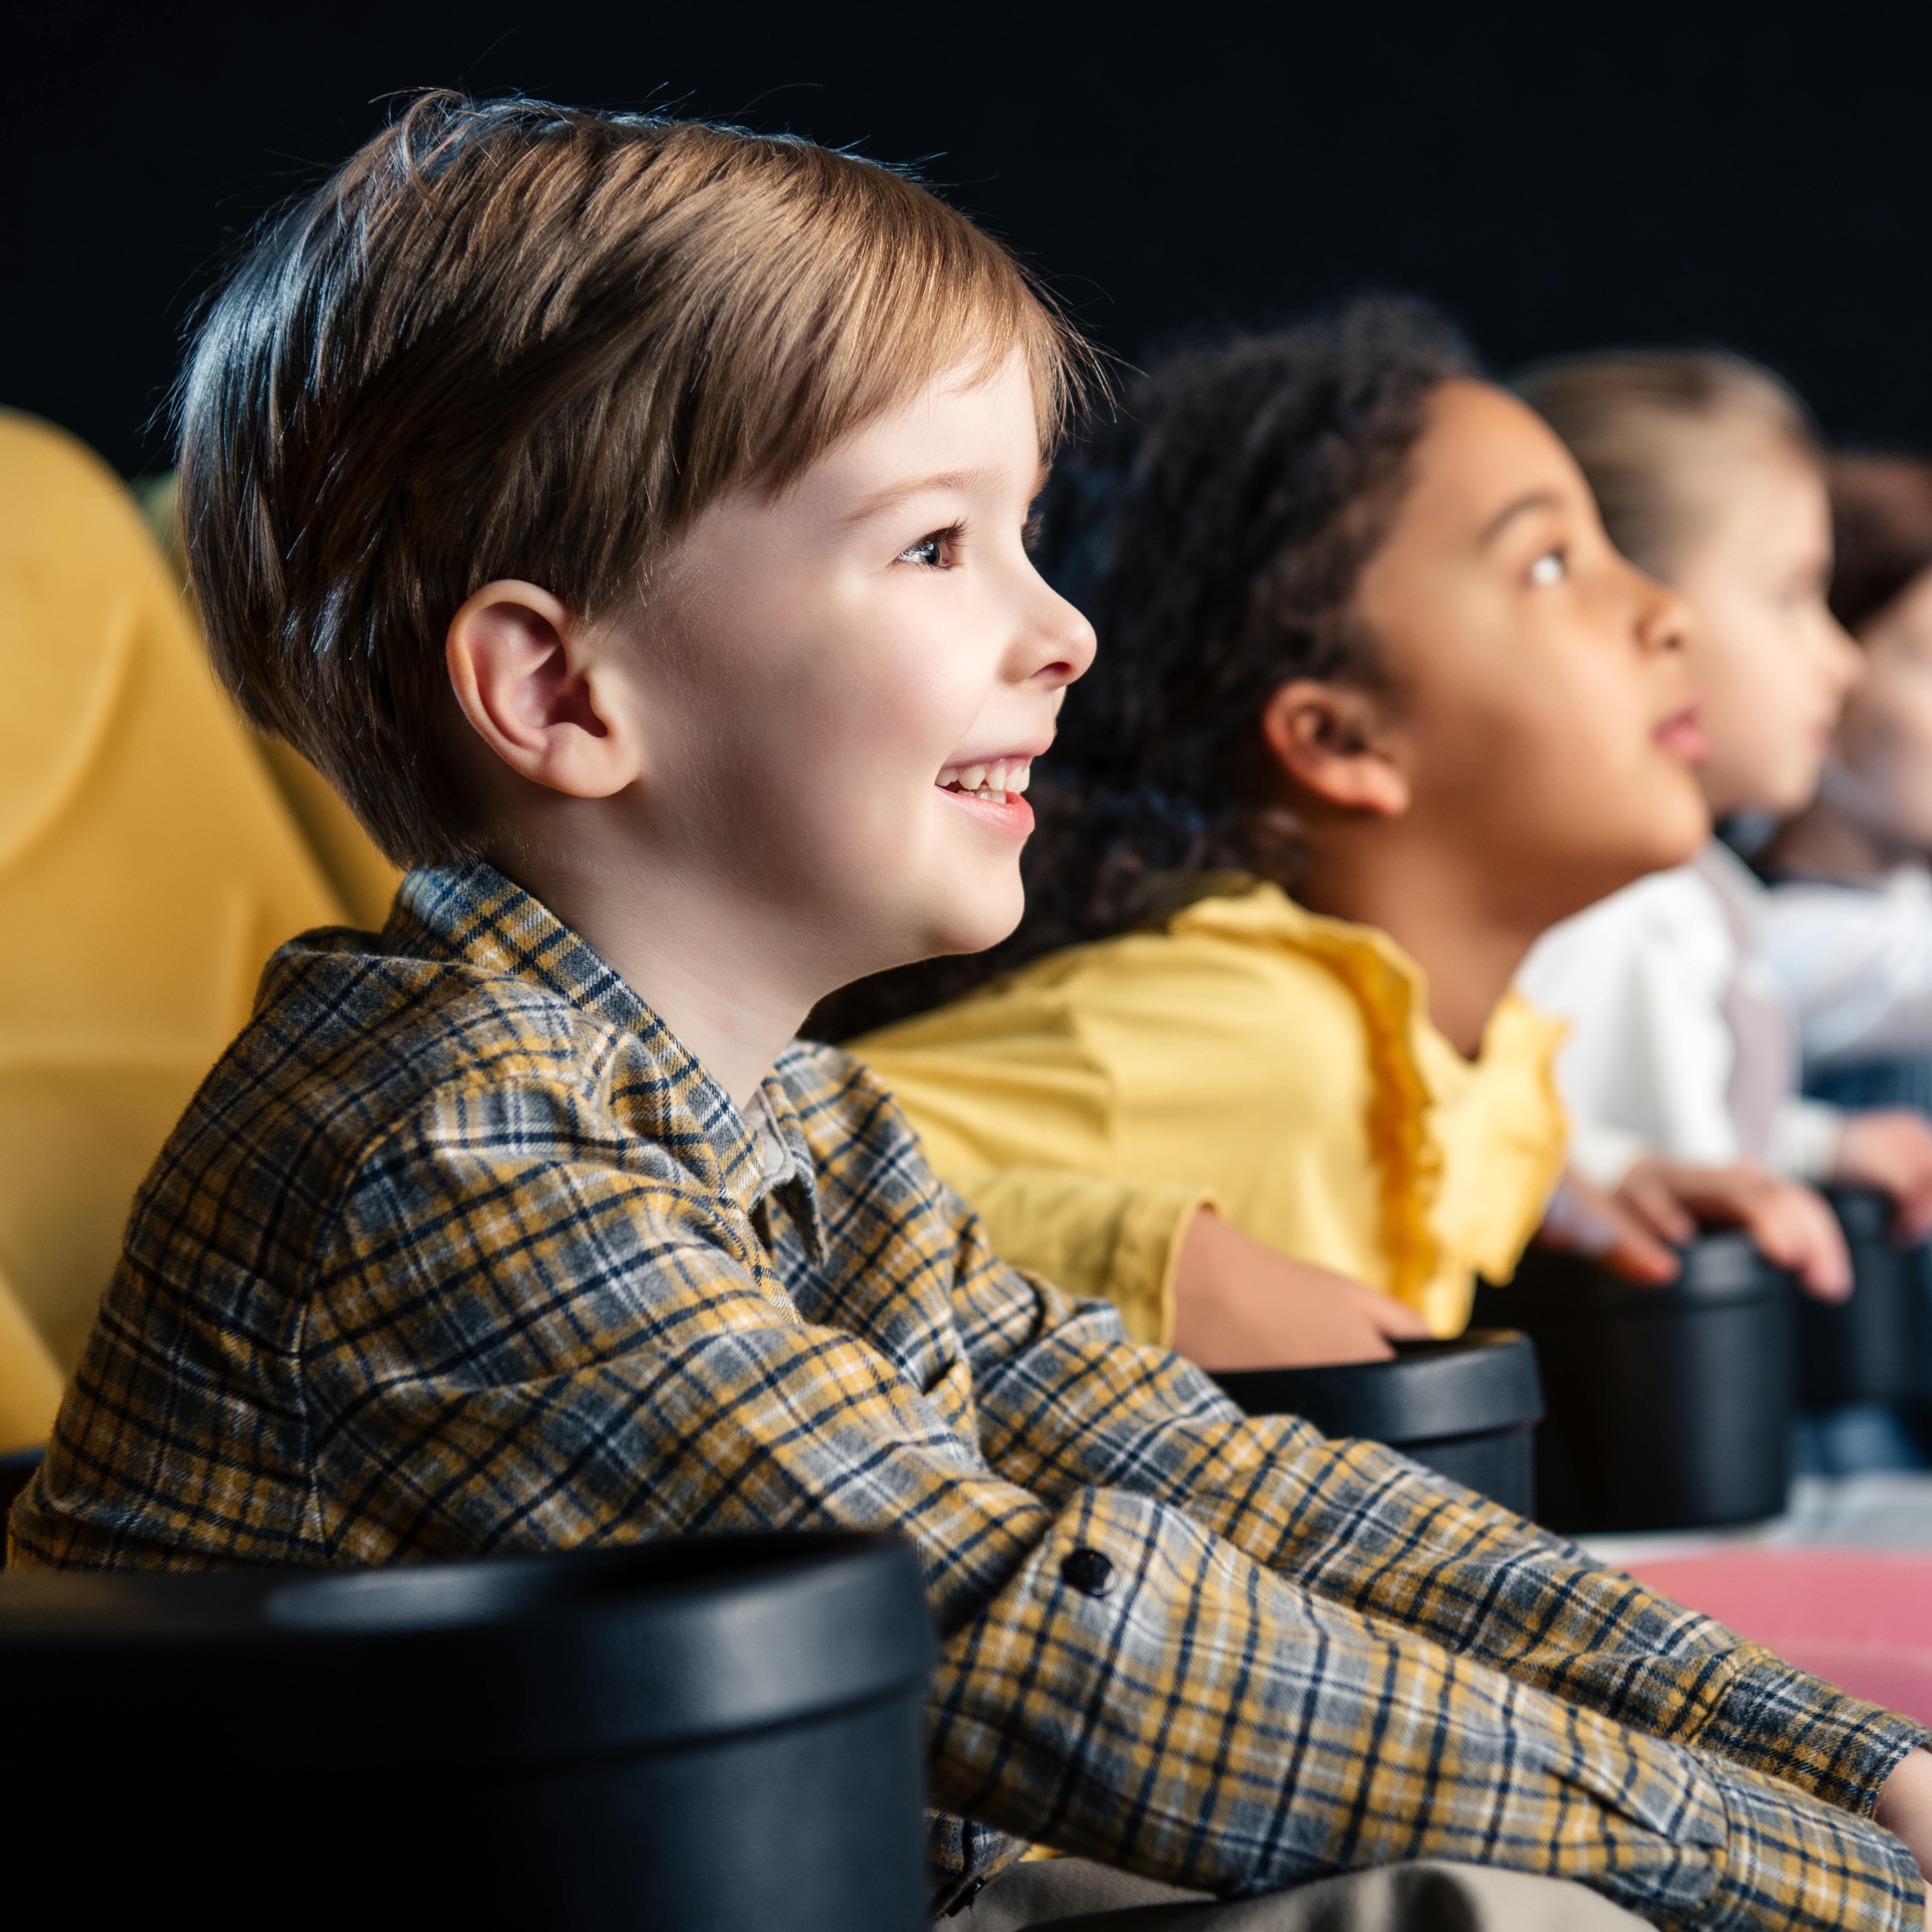 Blick von der Seite auf Kinder die nebeneinander in gelben Sitzen im Kino sitzen.